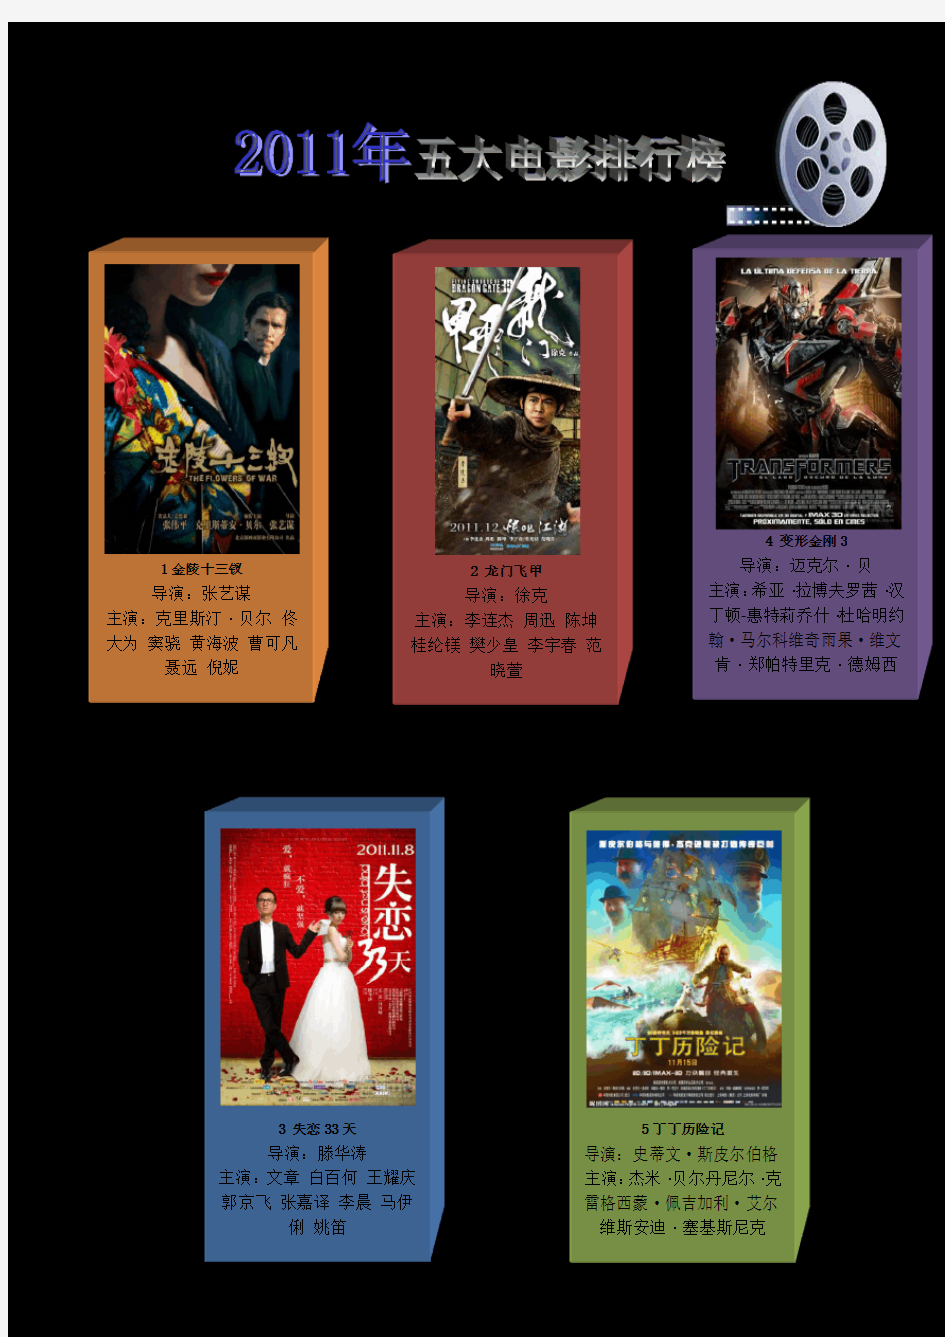 2011年五大电影排行榜